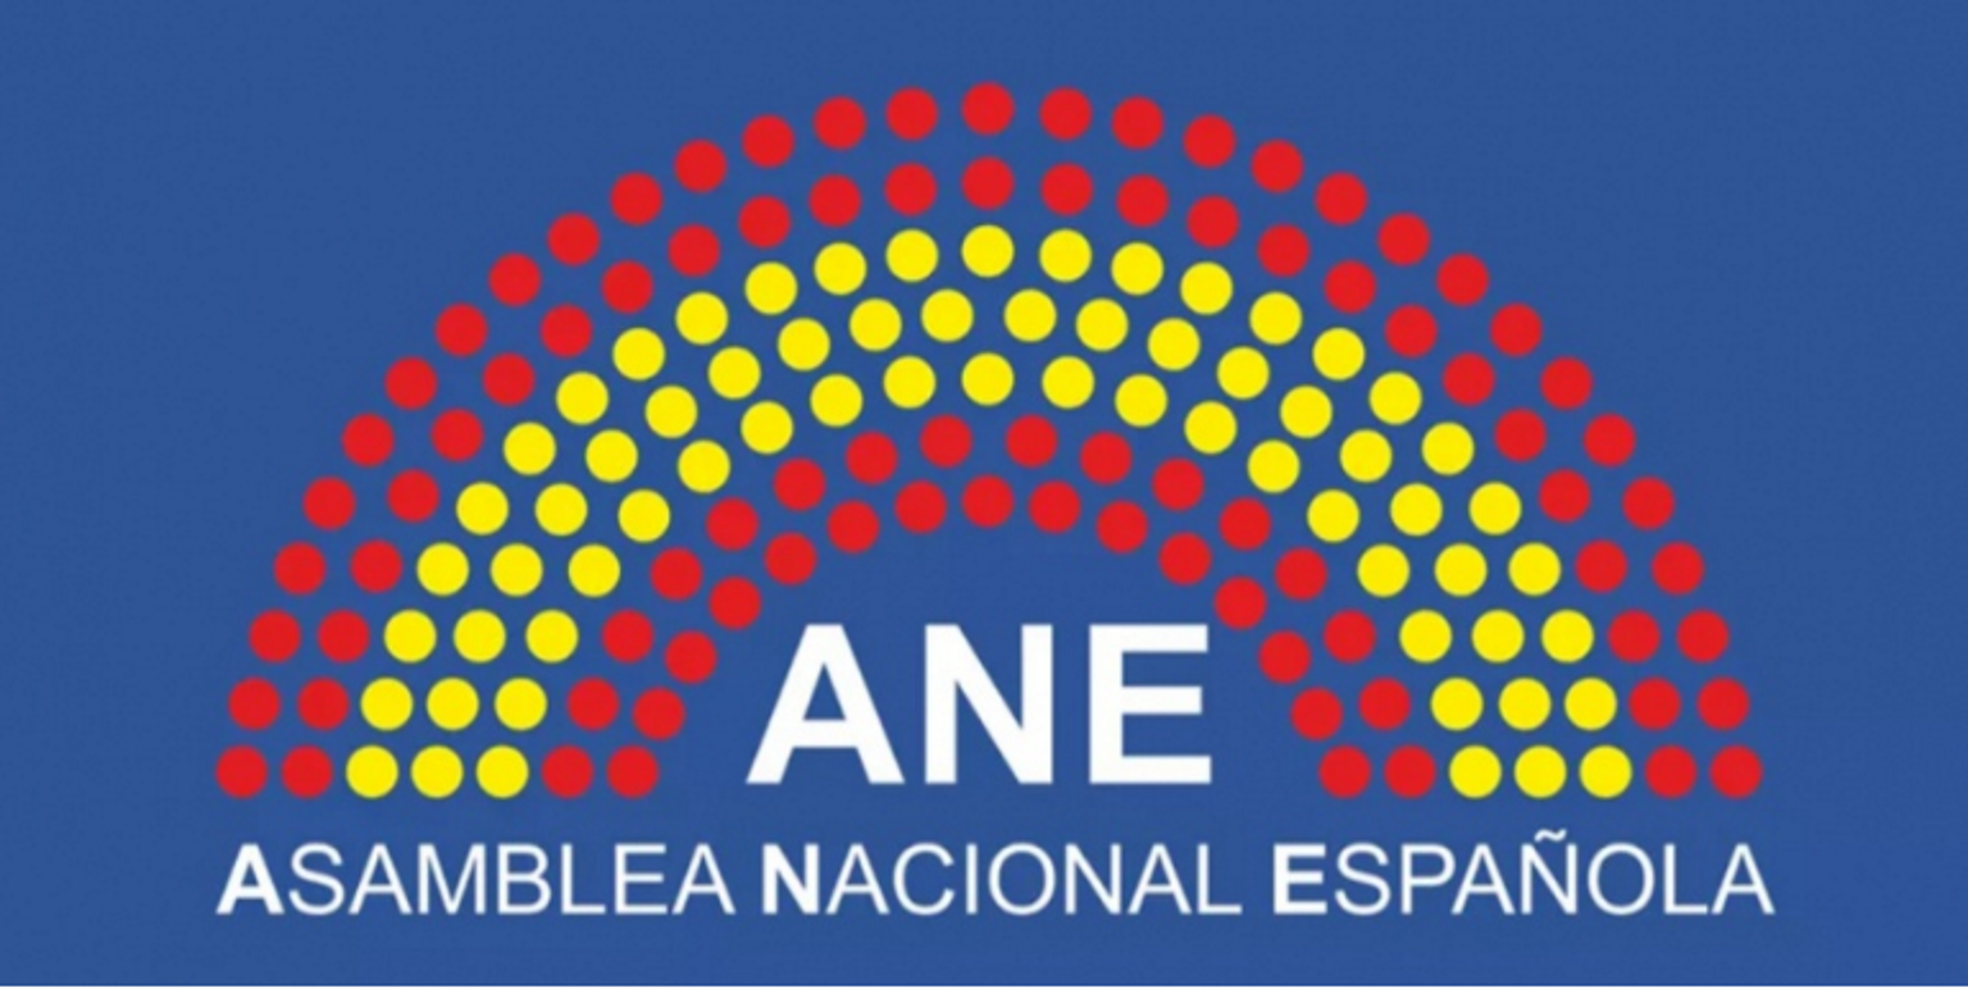 L'enèsim intent espanyolista: Asamblea Nacional Española